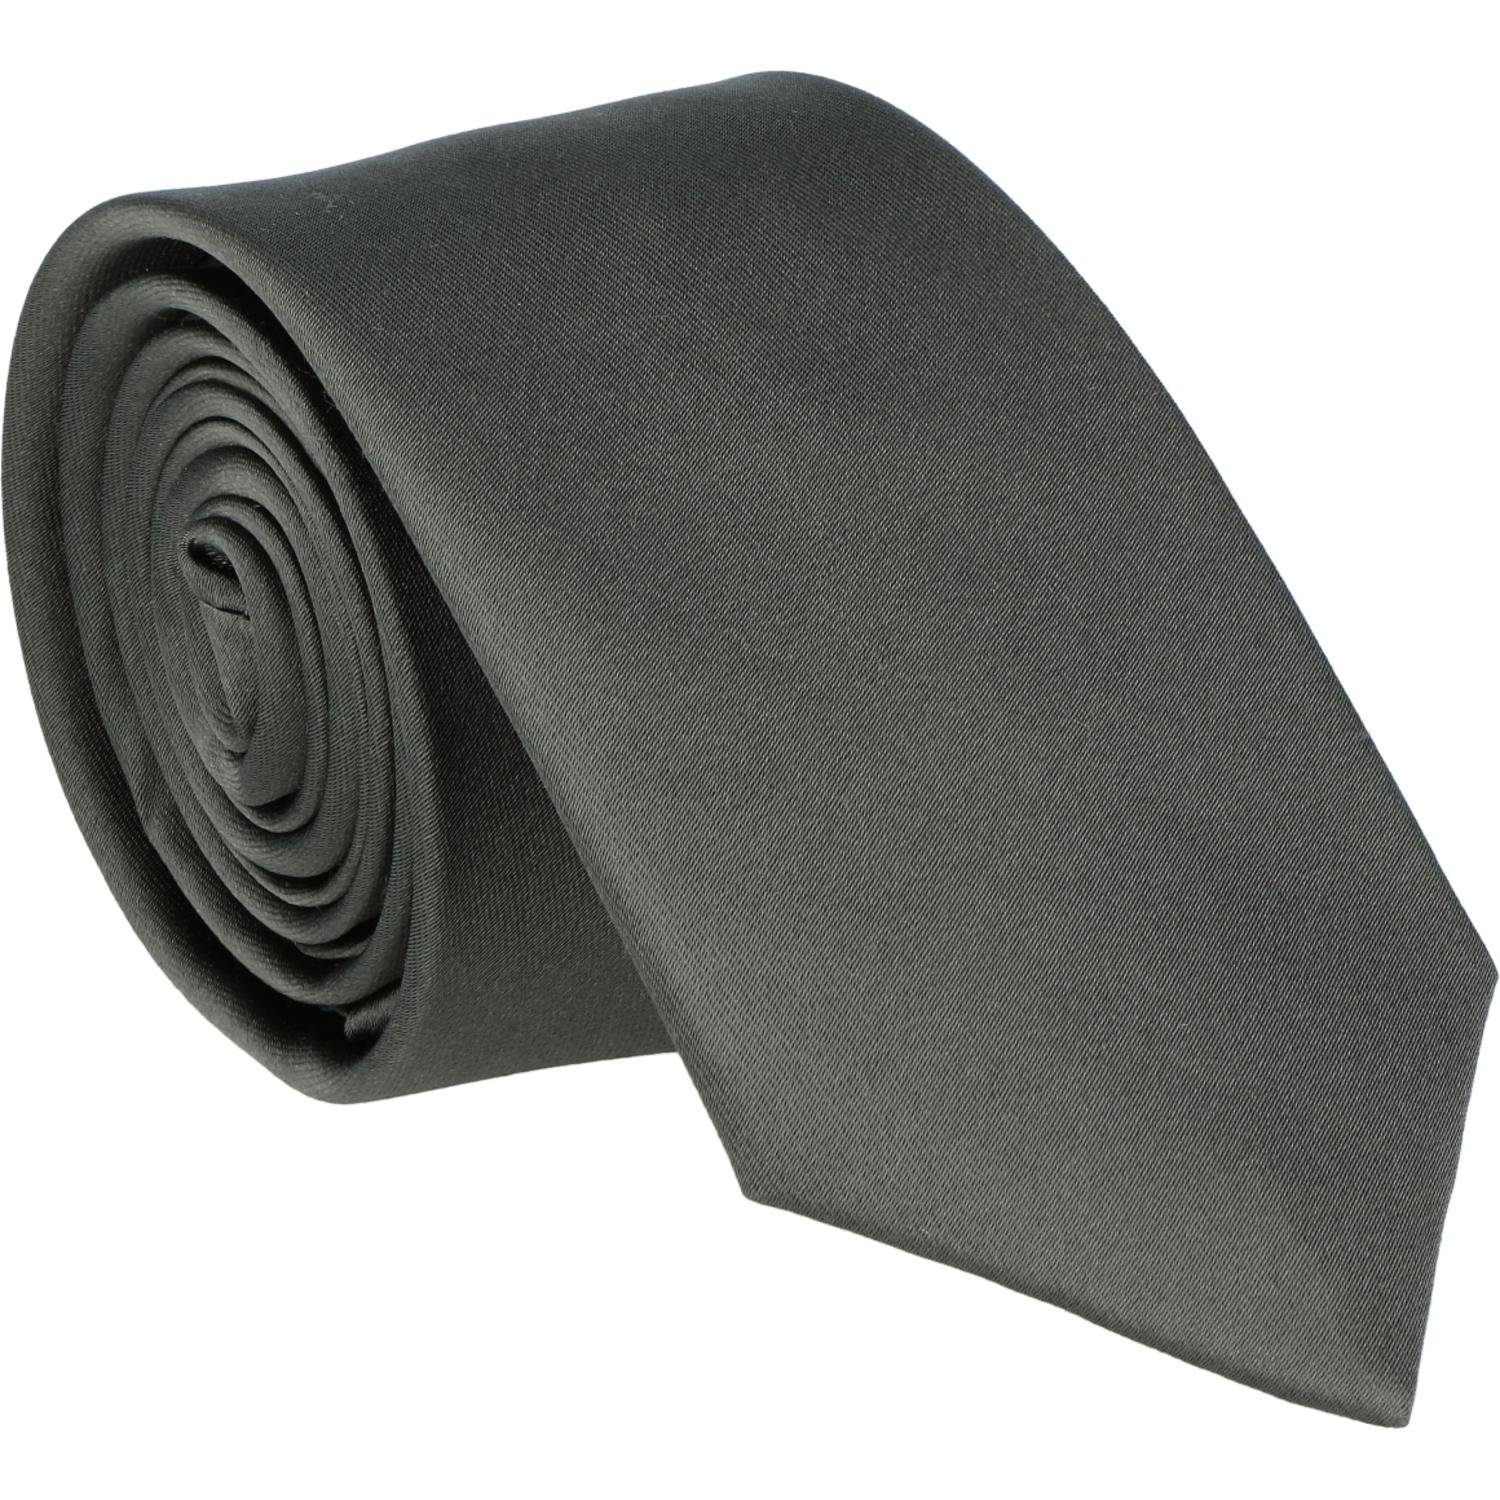 WILLEN Krawatte Willen Krawatte | Breite Krawatten